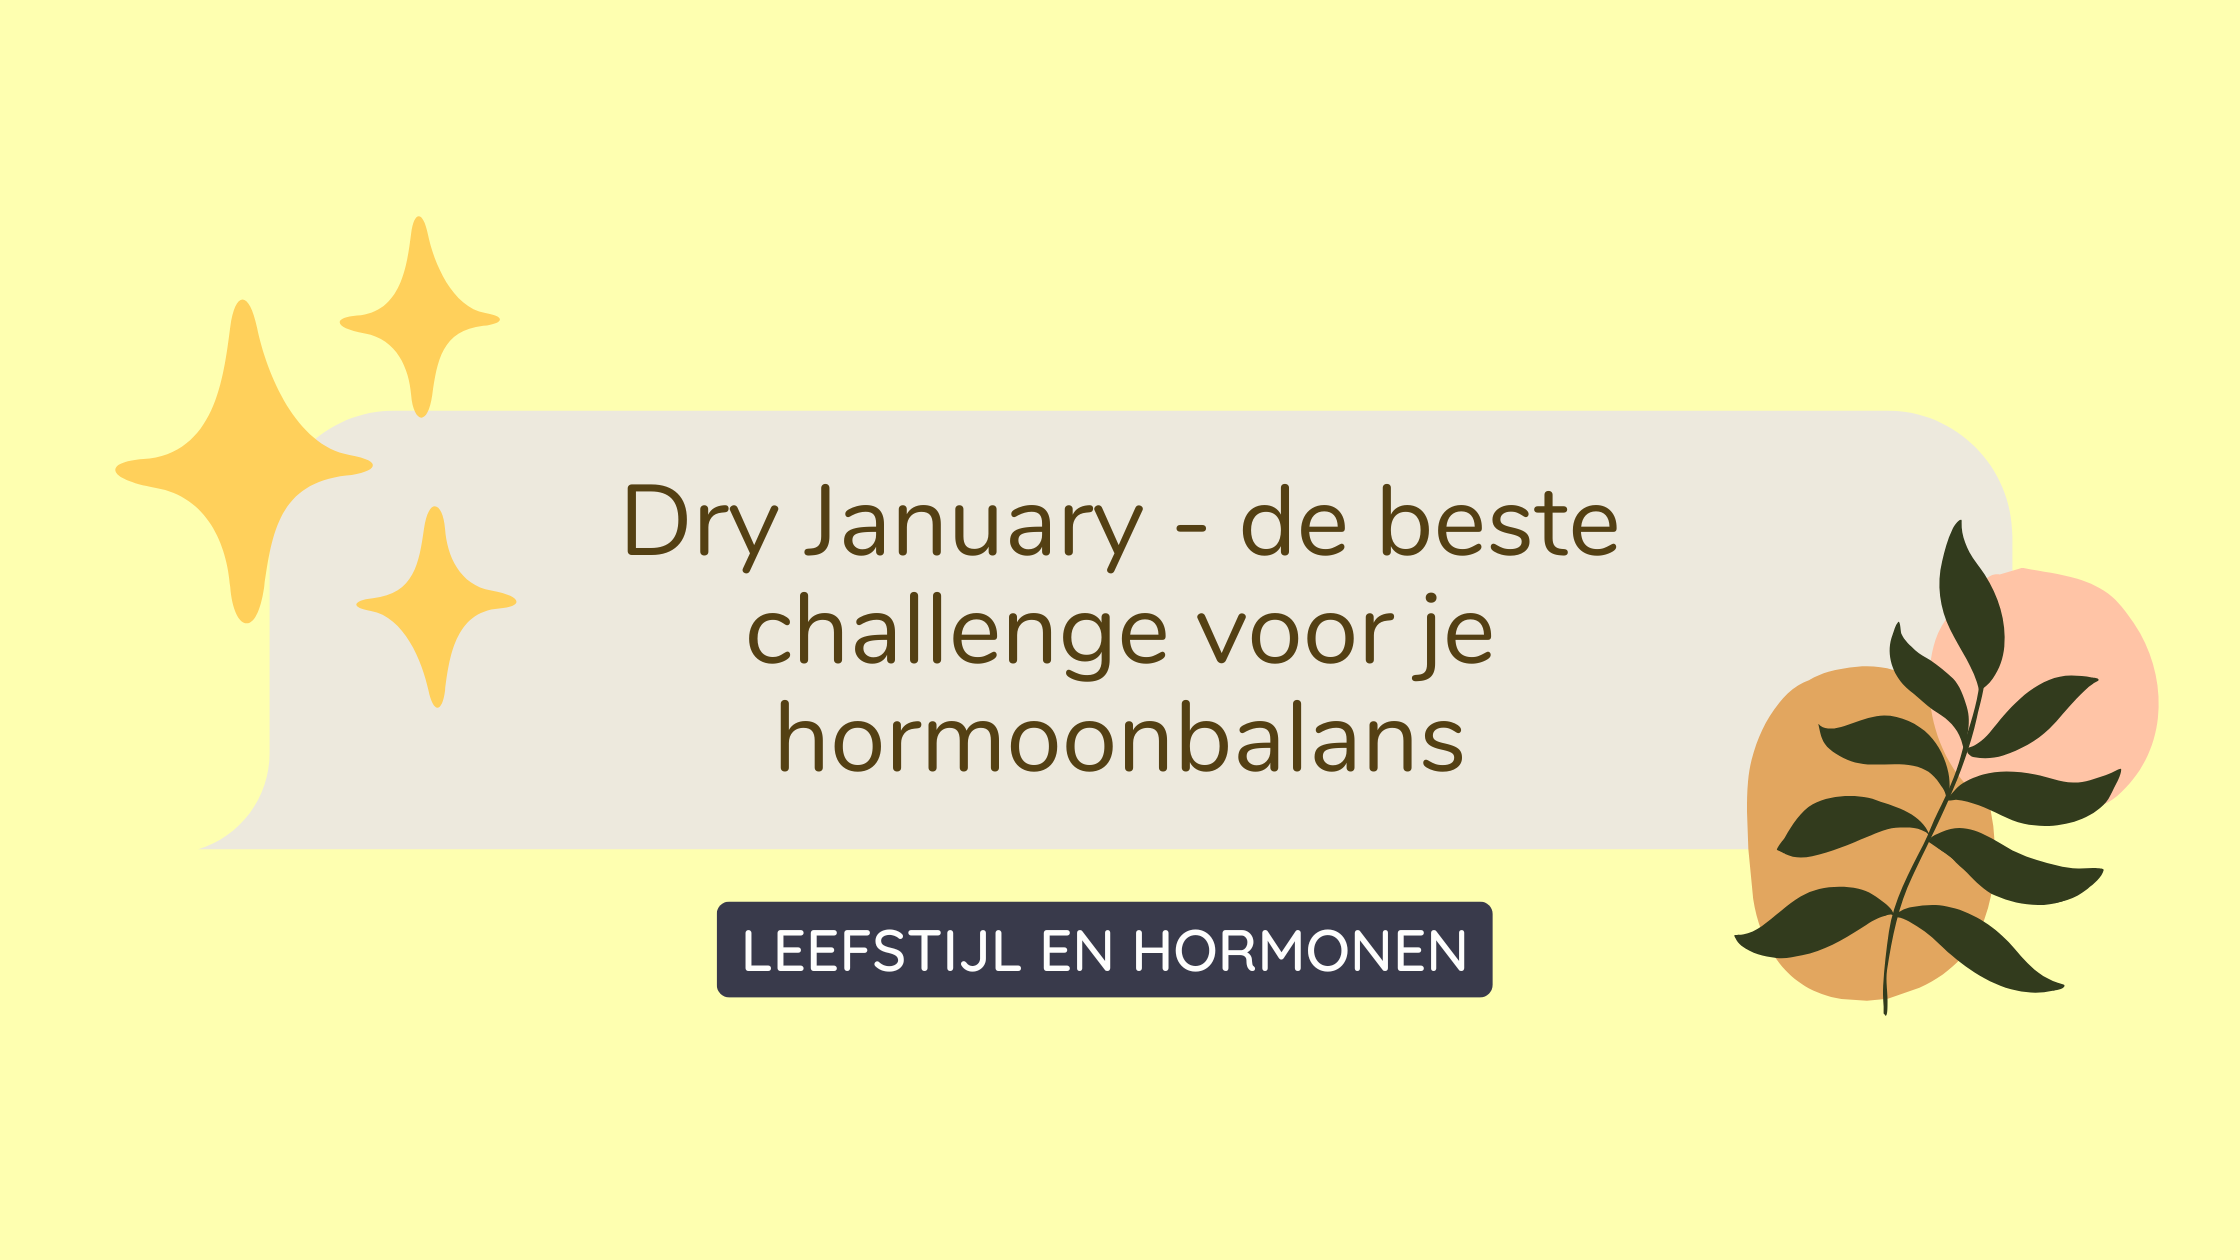 Dry January Hormoonbalans